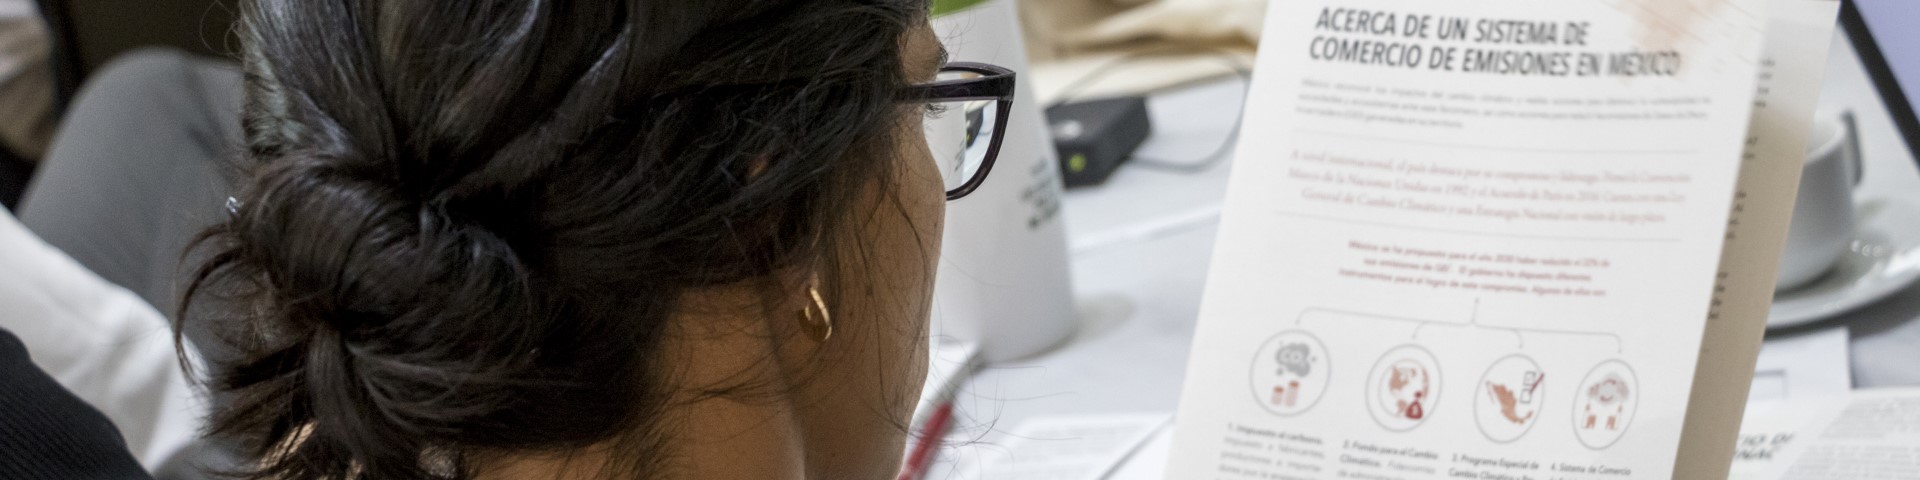 Eine Frau schaut auf ein spanisches Dokument zum Emissionshandelsystem in Mexiko.